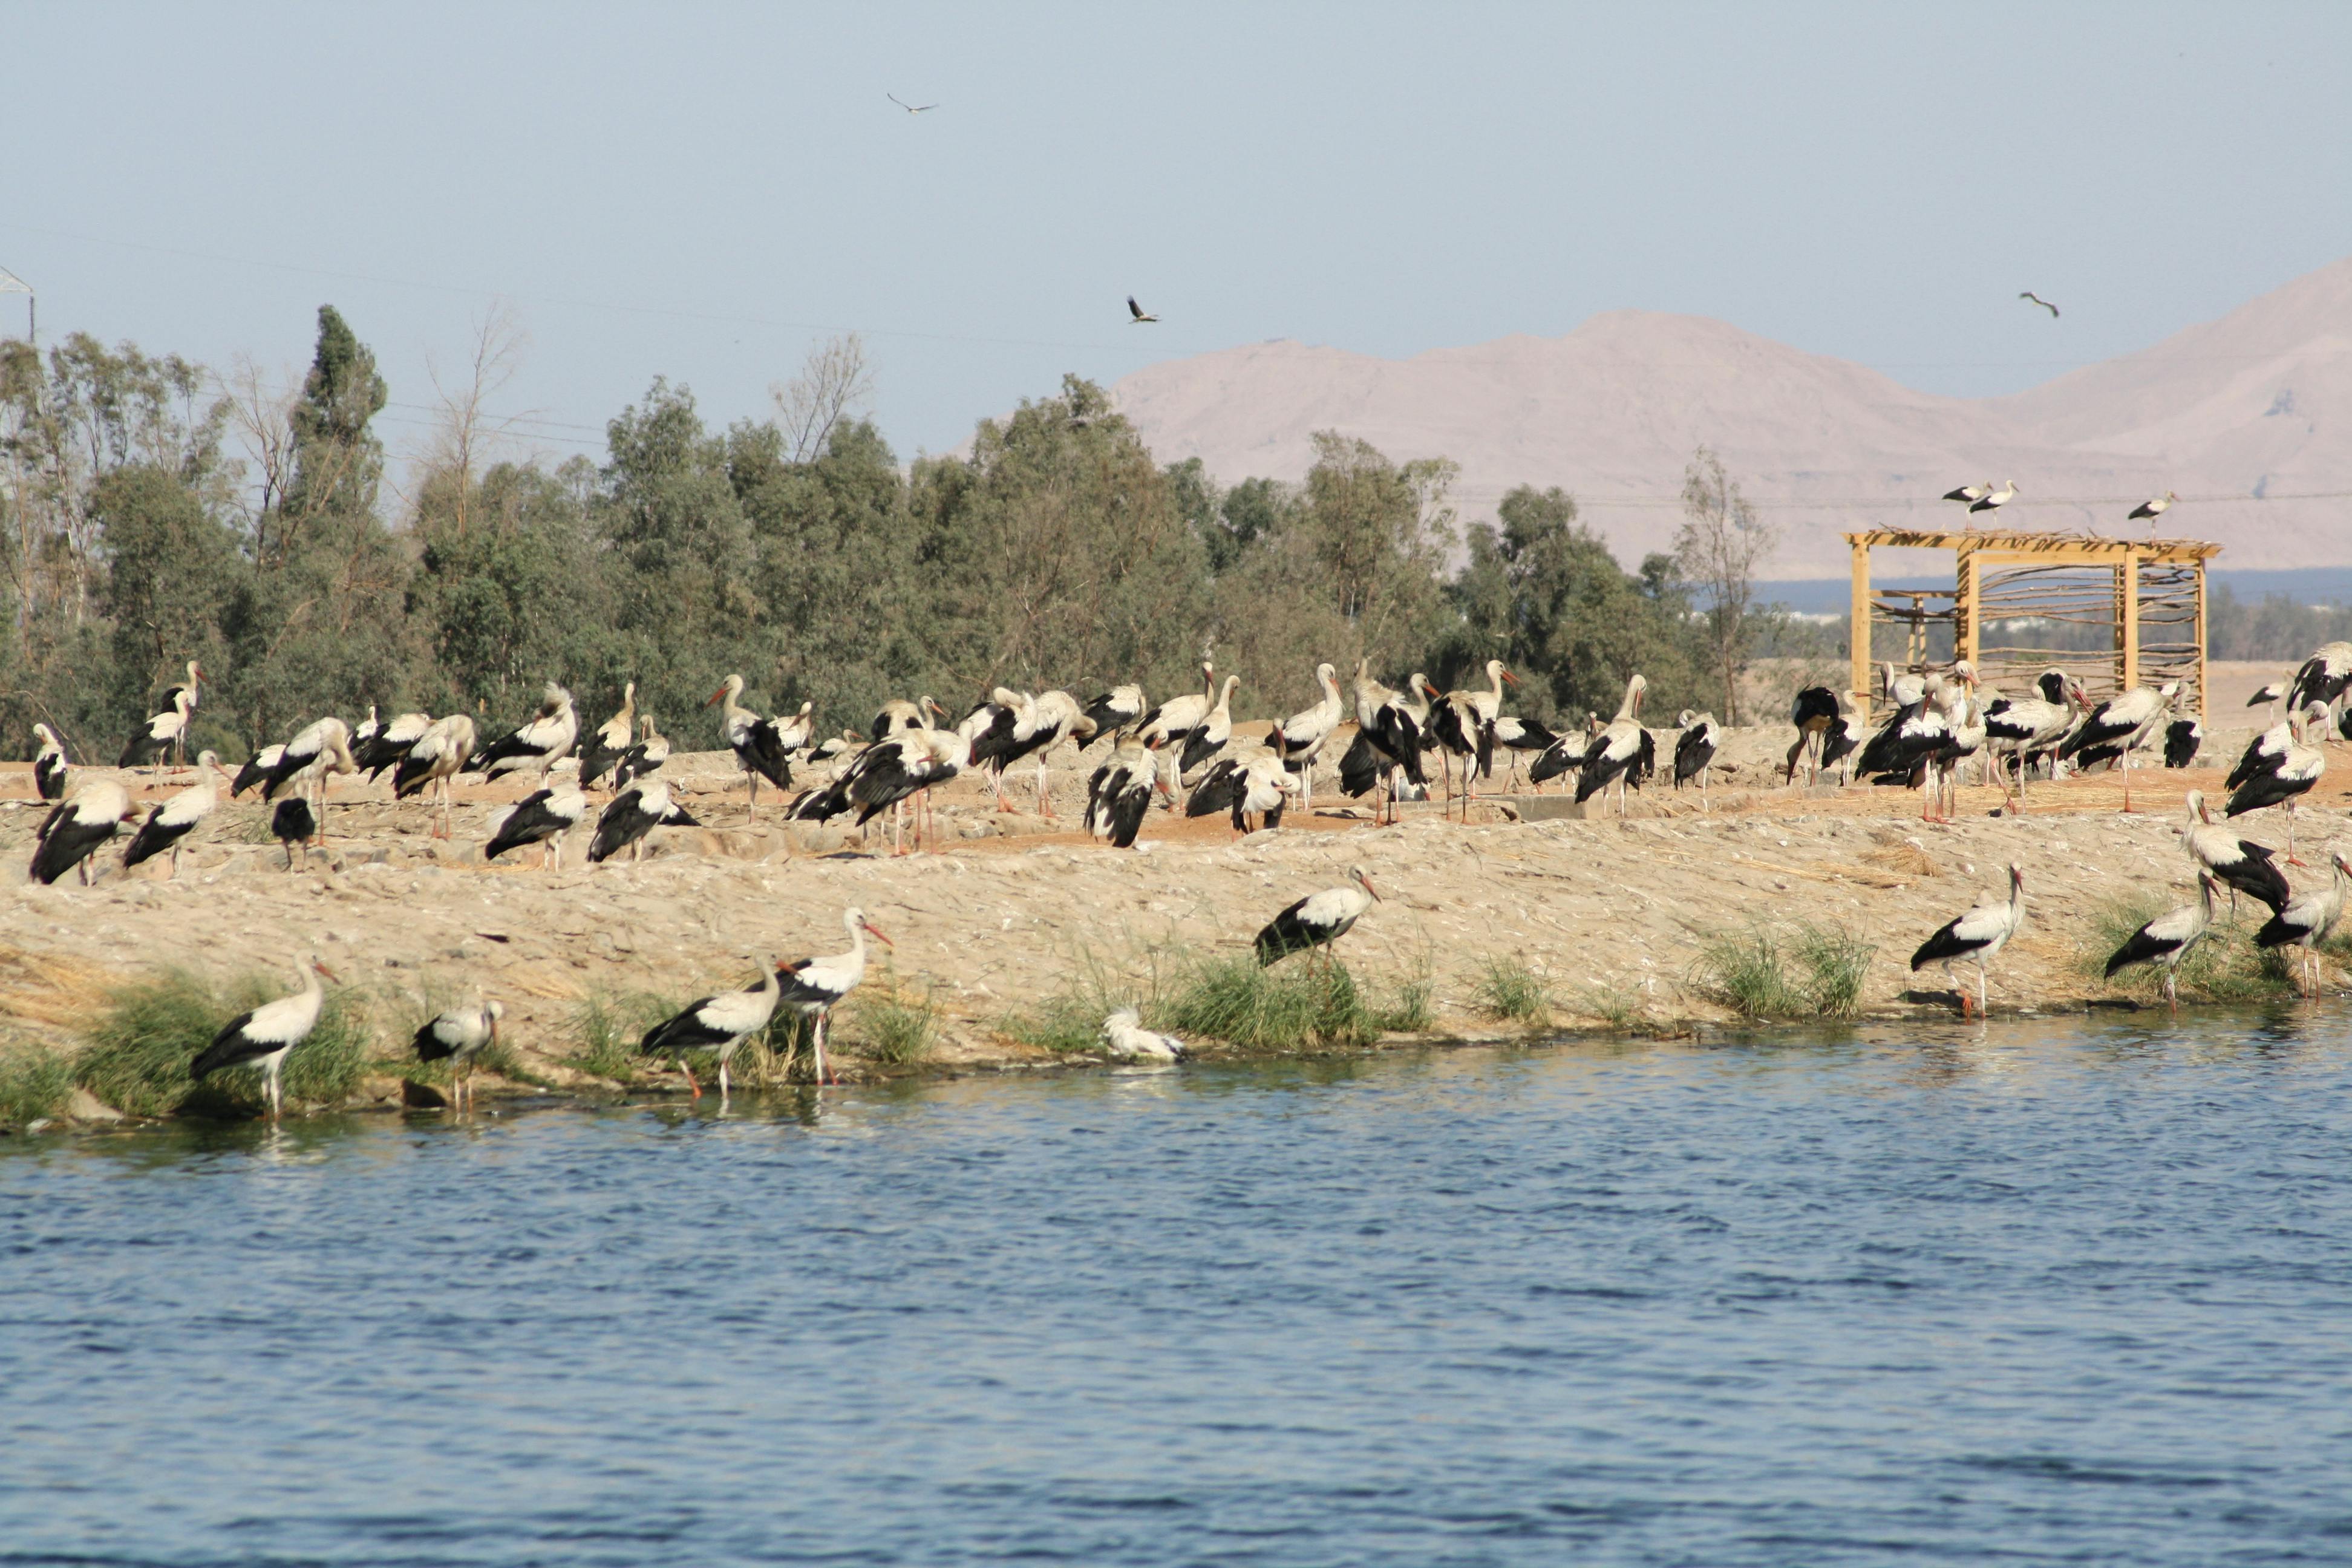 Vogelbeobachtung mit Sandbuggy-Erlebnis in Sharm